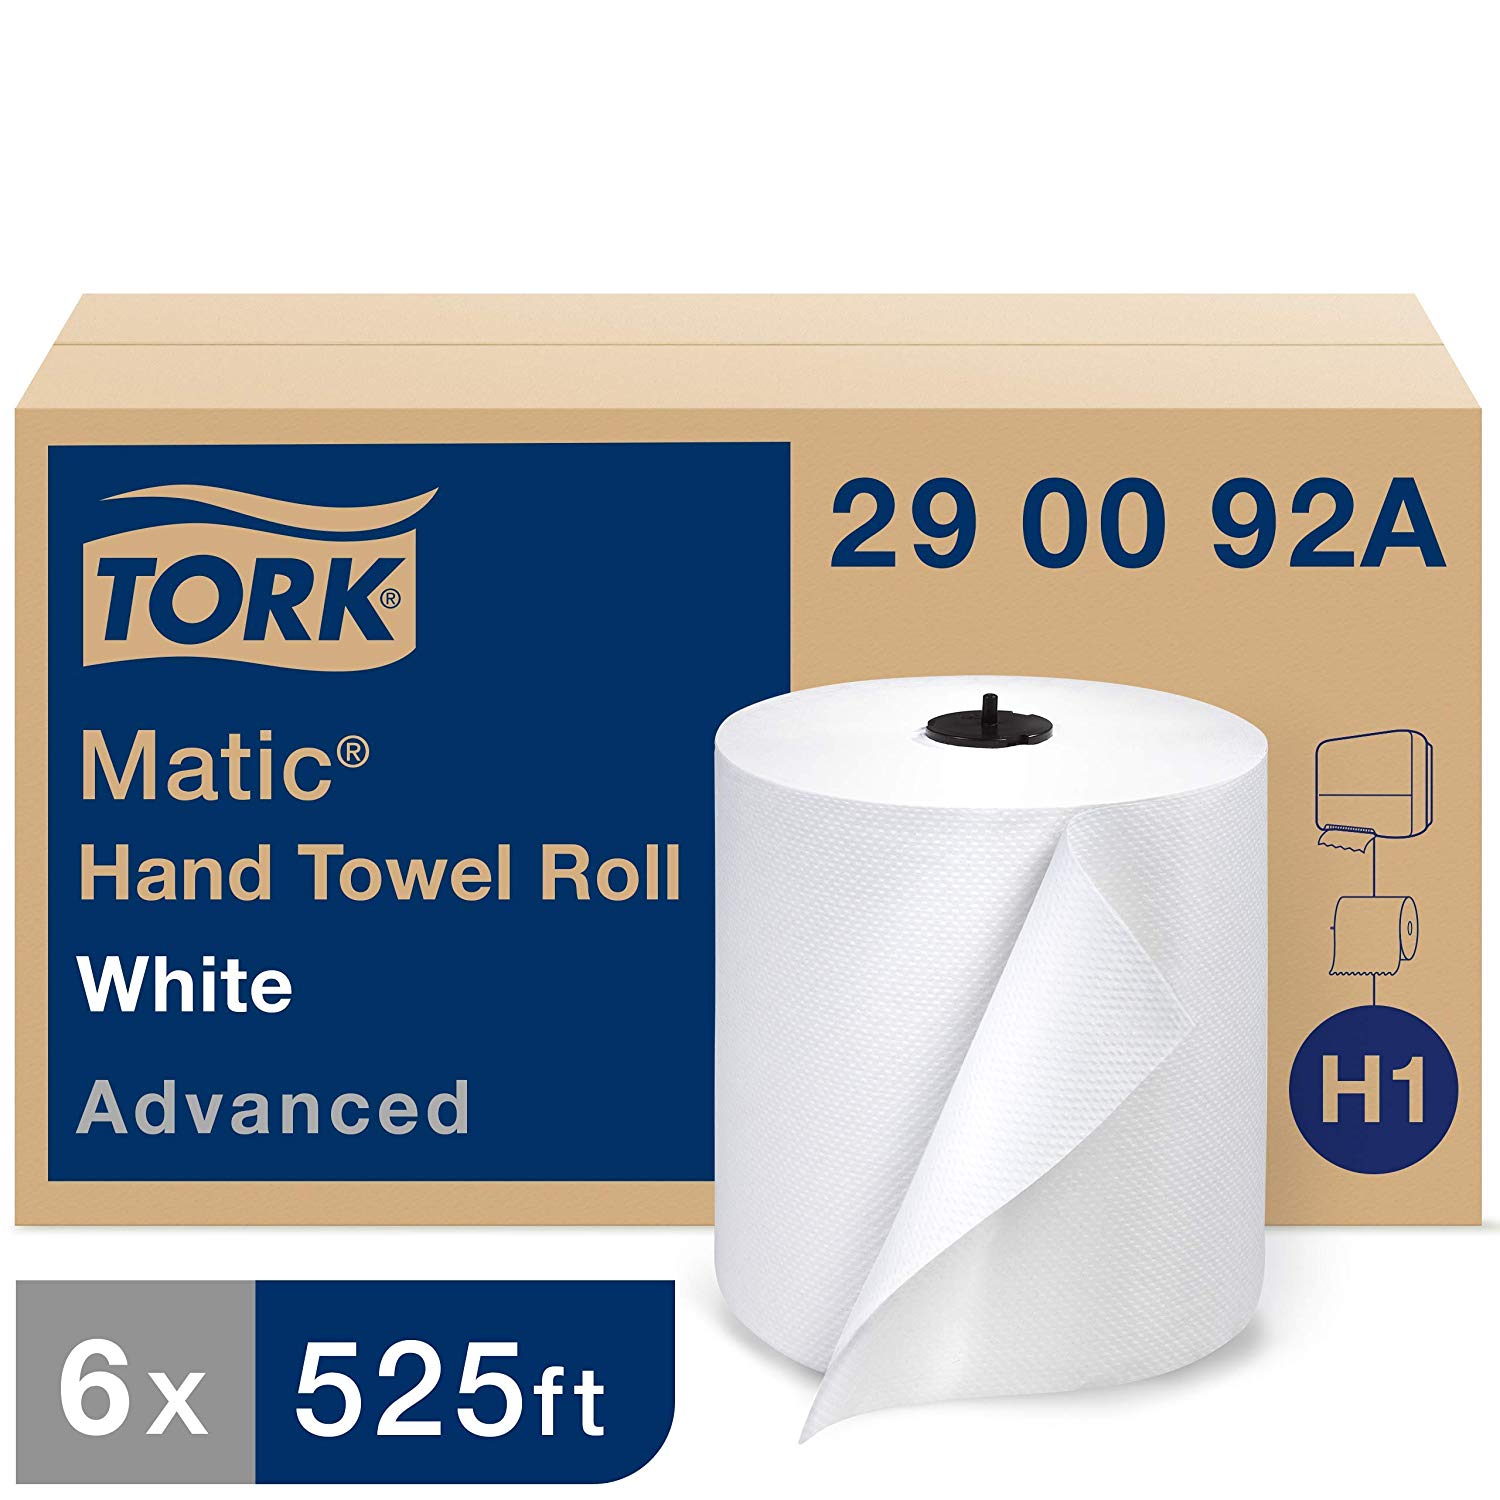 SCA AIRLAID TORK TOWEL (290092) 6 ROLLS/CASE 525